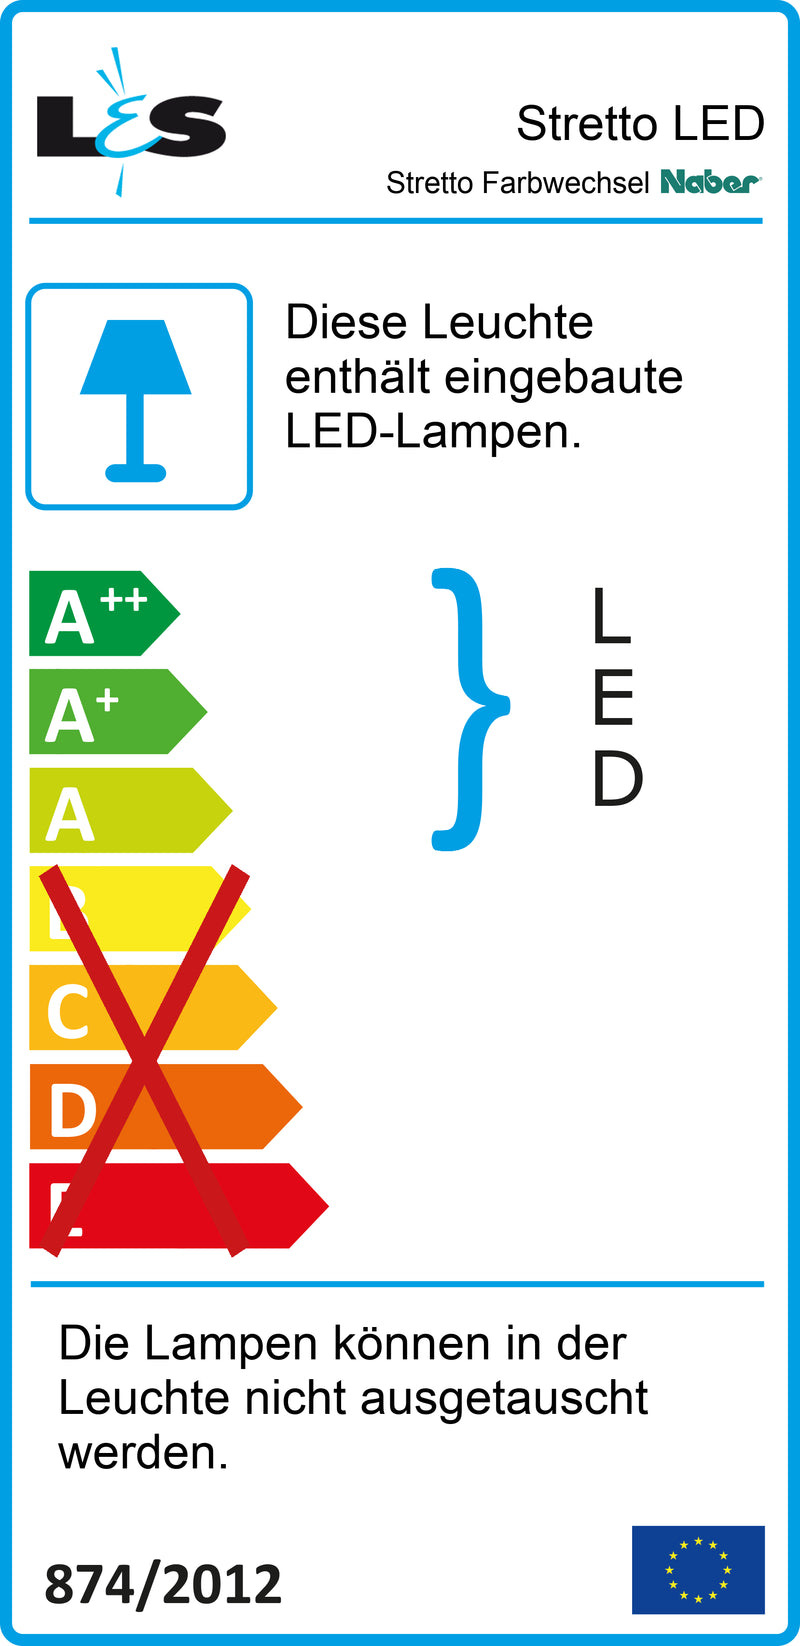 E-Label zu Zeichnung zu Stretto Farbwechsel LED als Variante Einzelleuchte ohne Schalter, edelstahlfarbig von Naber GmbH in der Kategorie Lichttechnik in Österreich auf conceptshop.at